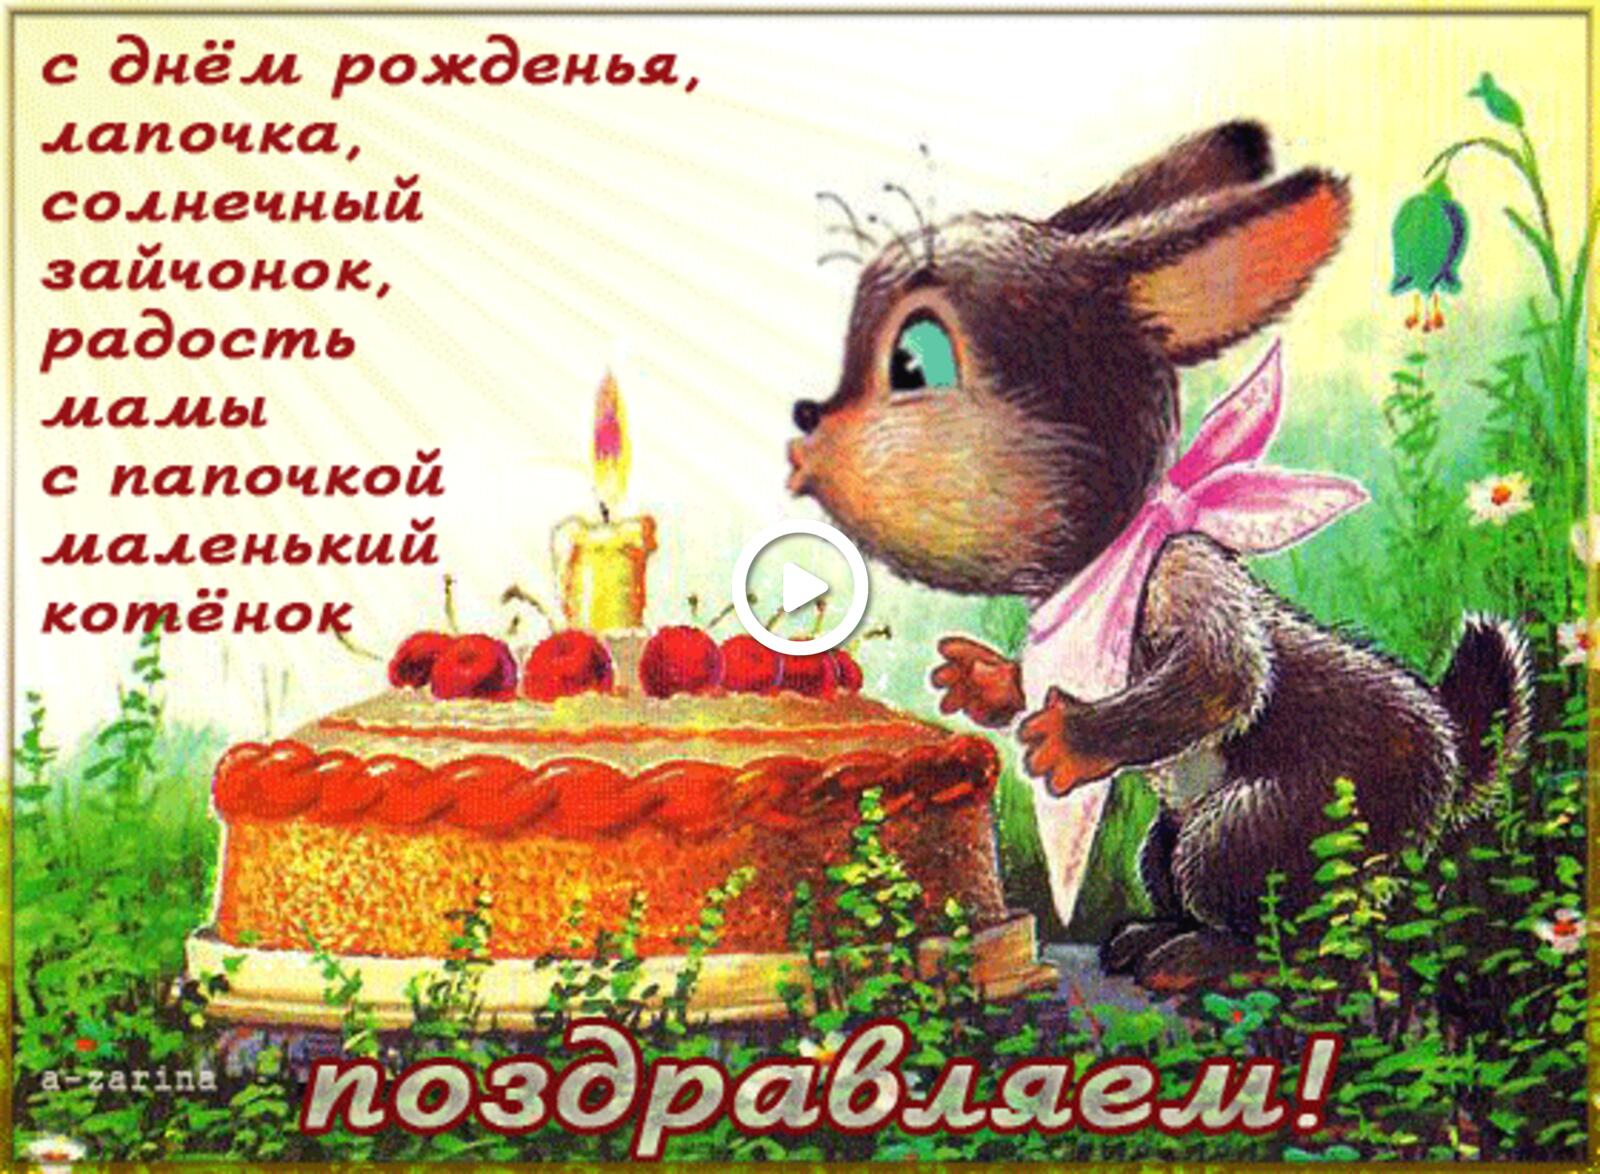 一张以生日快乐 蛋糕 烛为主题的明信片